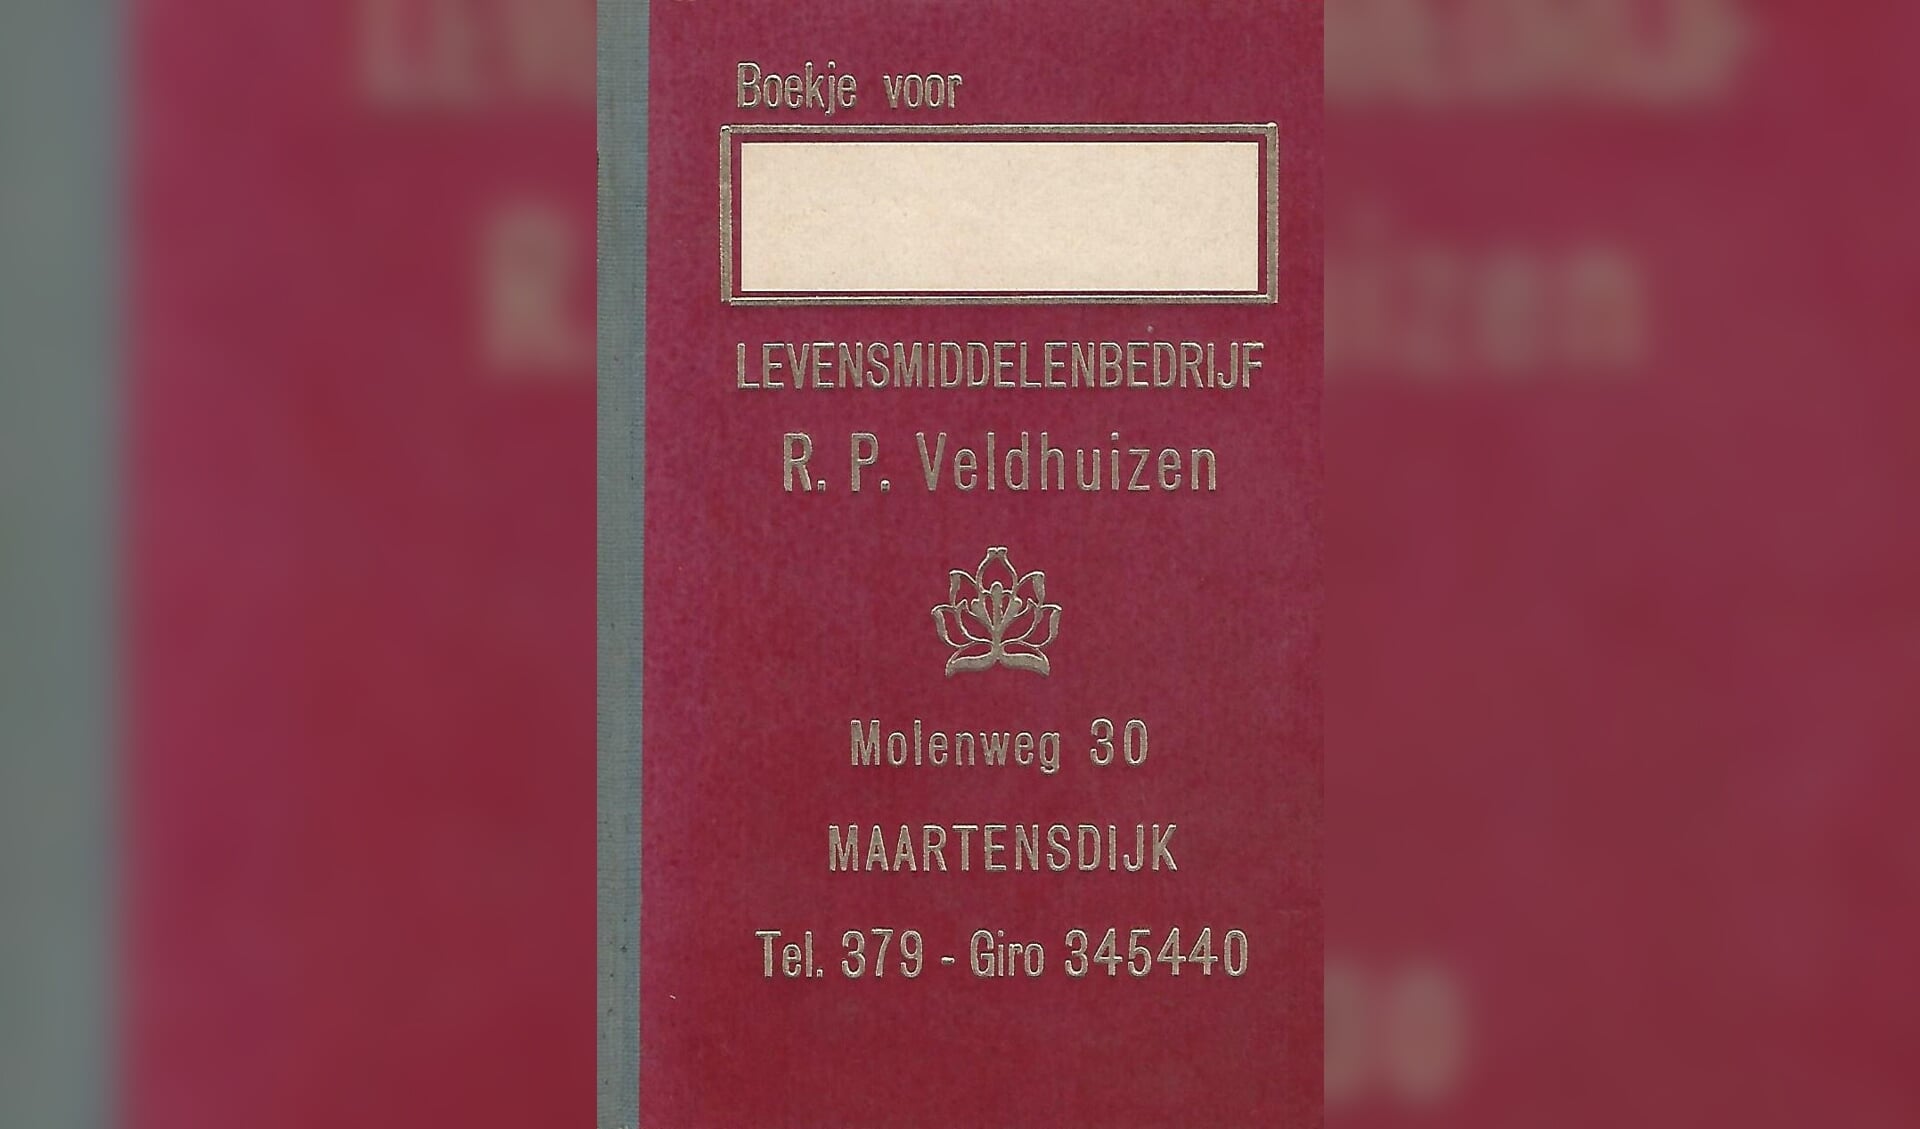 Zoon Piet Veldhuizen heeft nog een blanco exemplaar van het kruideniersboekje waarin de veelal Maartensdijkse klanten wekelijks hun bestellingen opschreven; het ingevulde boekje werd dan door zijn vader Roelof opgehaald, waarna de boodschappen later weer thuis werden bezorgd. 